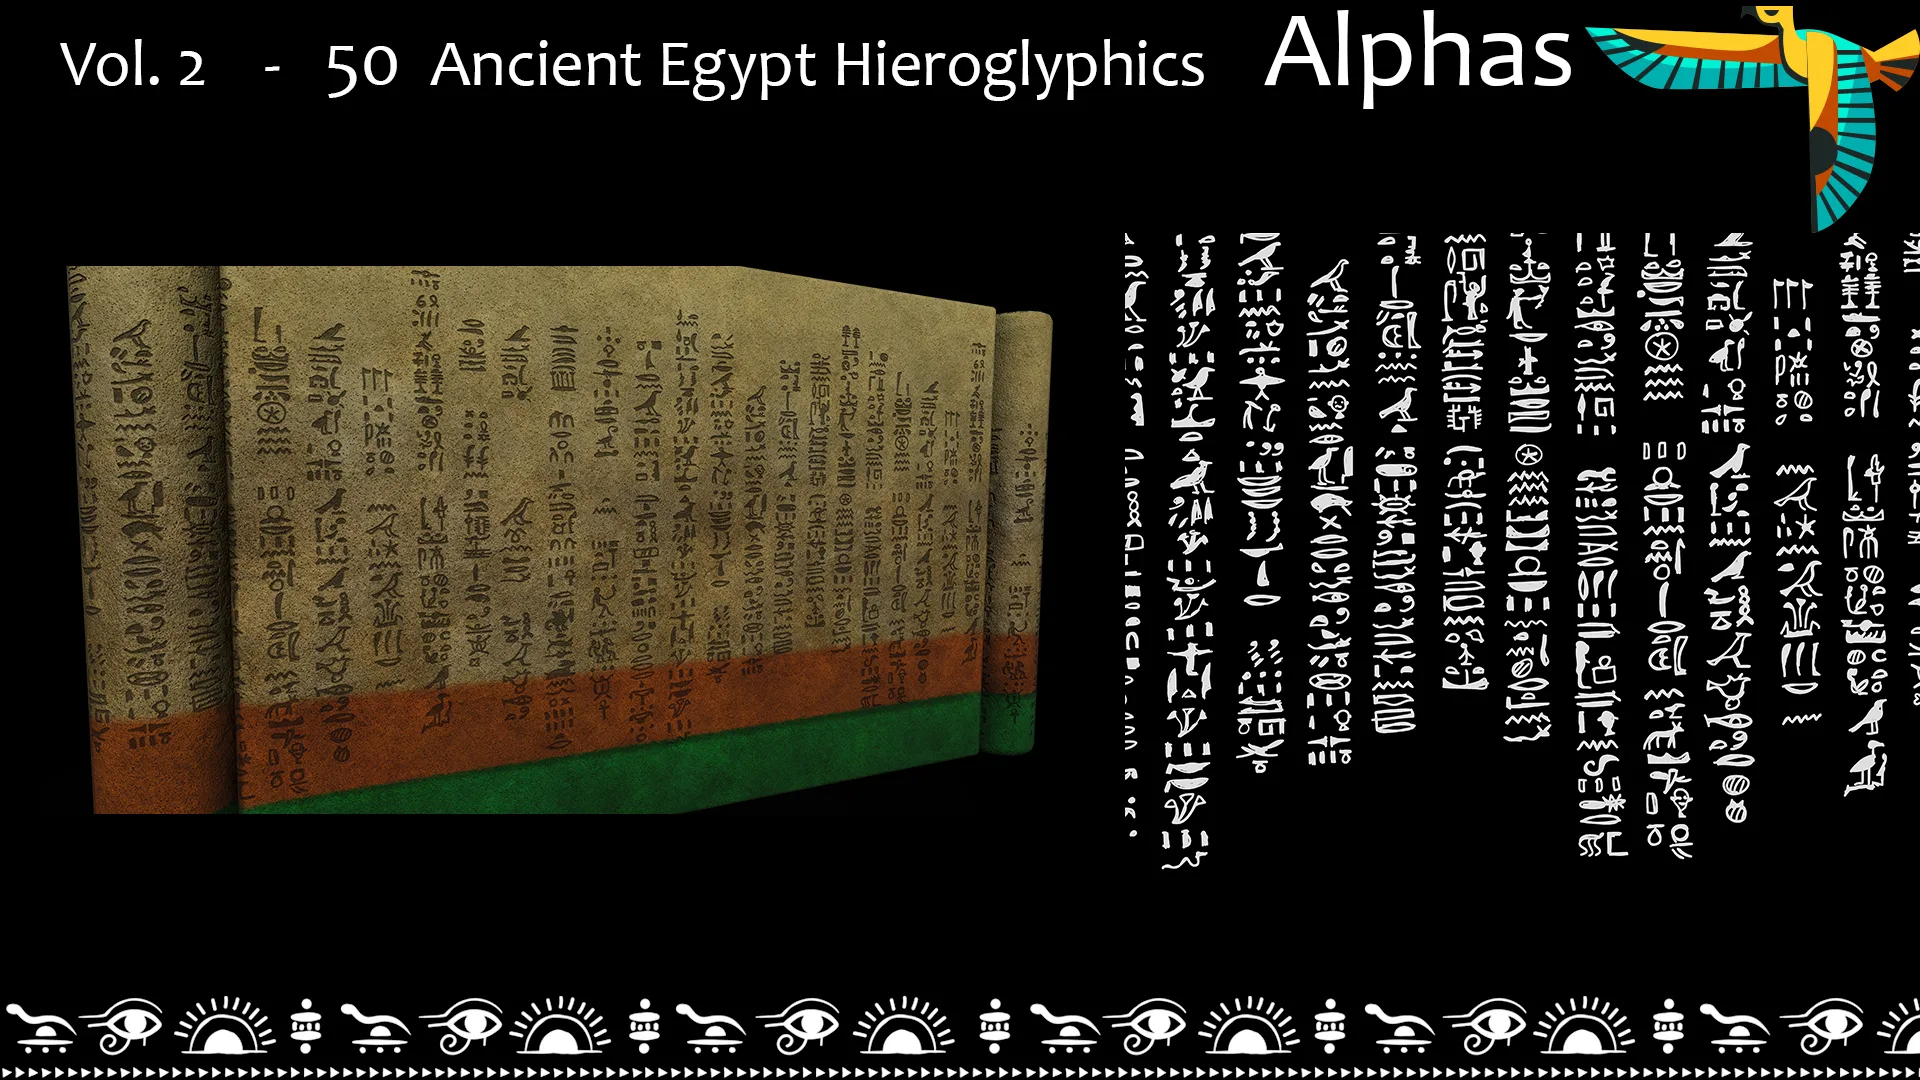 Vol. 2 - 50 Ancient Egypt Hieroglyphics Alphas